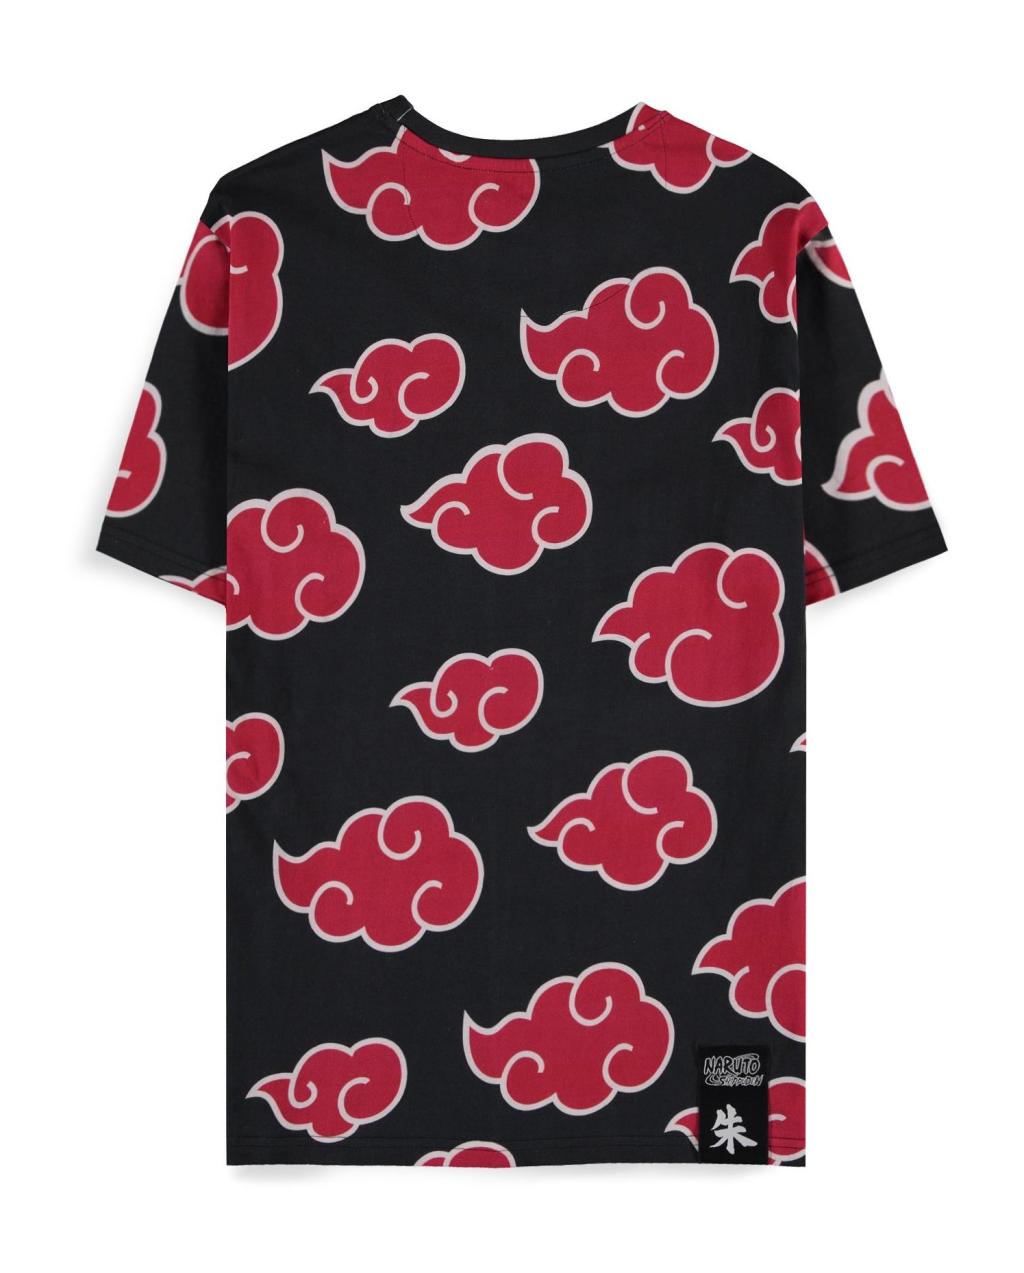 NARUTO SHIPPUDEN - Itachi Clouds - Men's T-shirt (XXL)